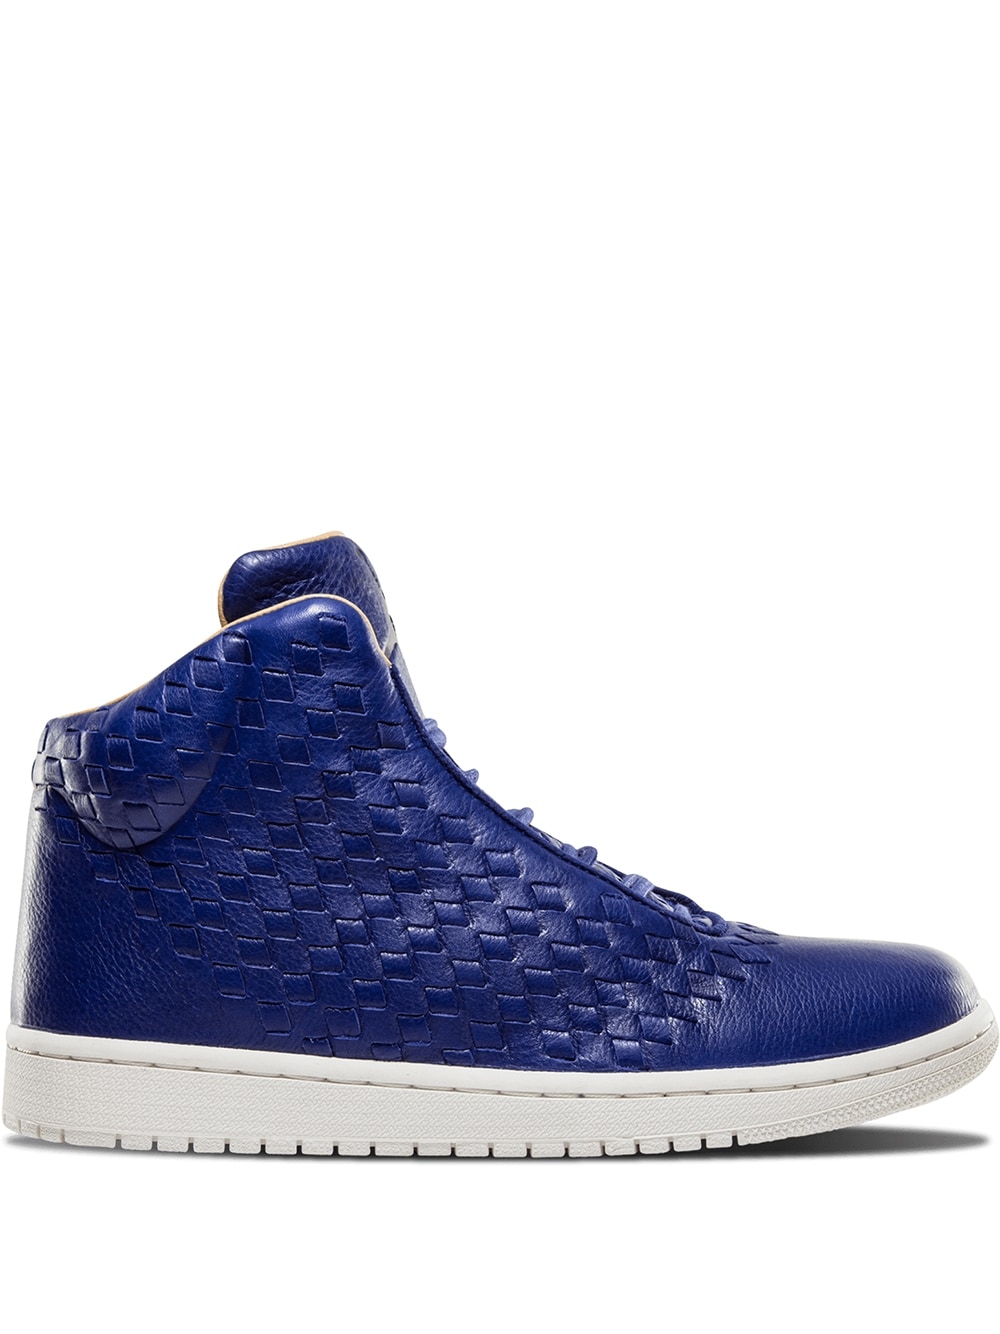 Jordan Jordan Shine sneakers - Blue